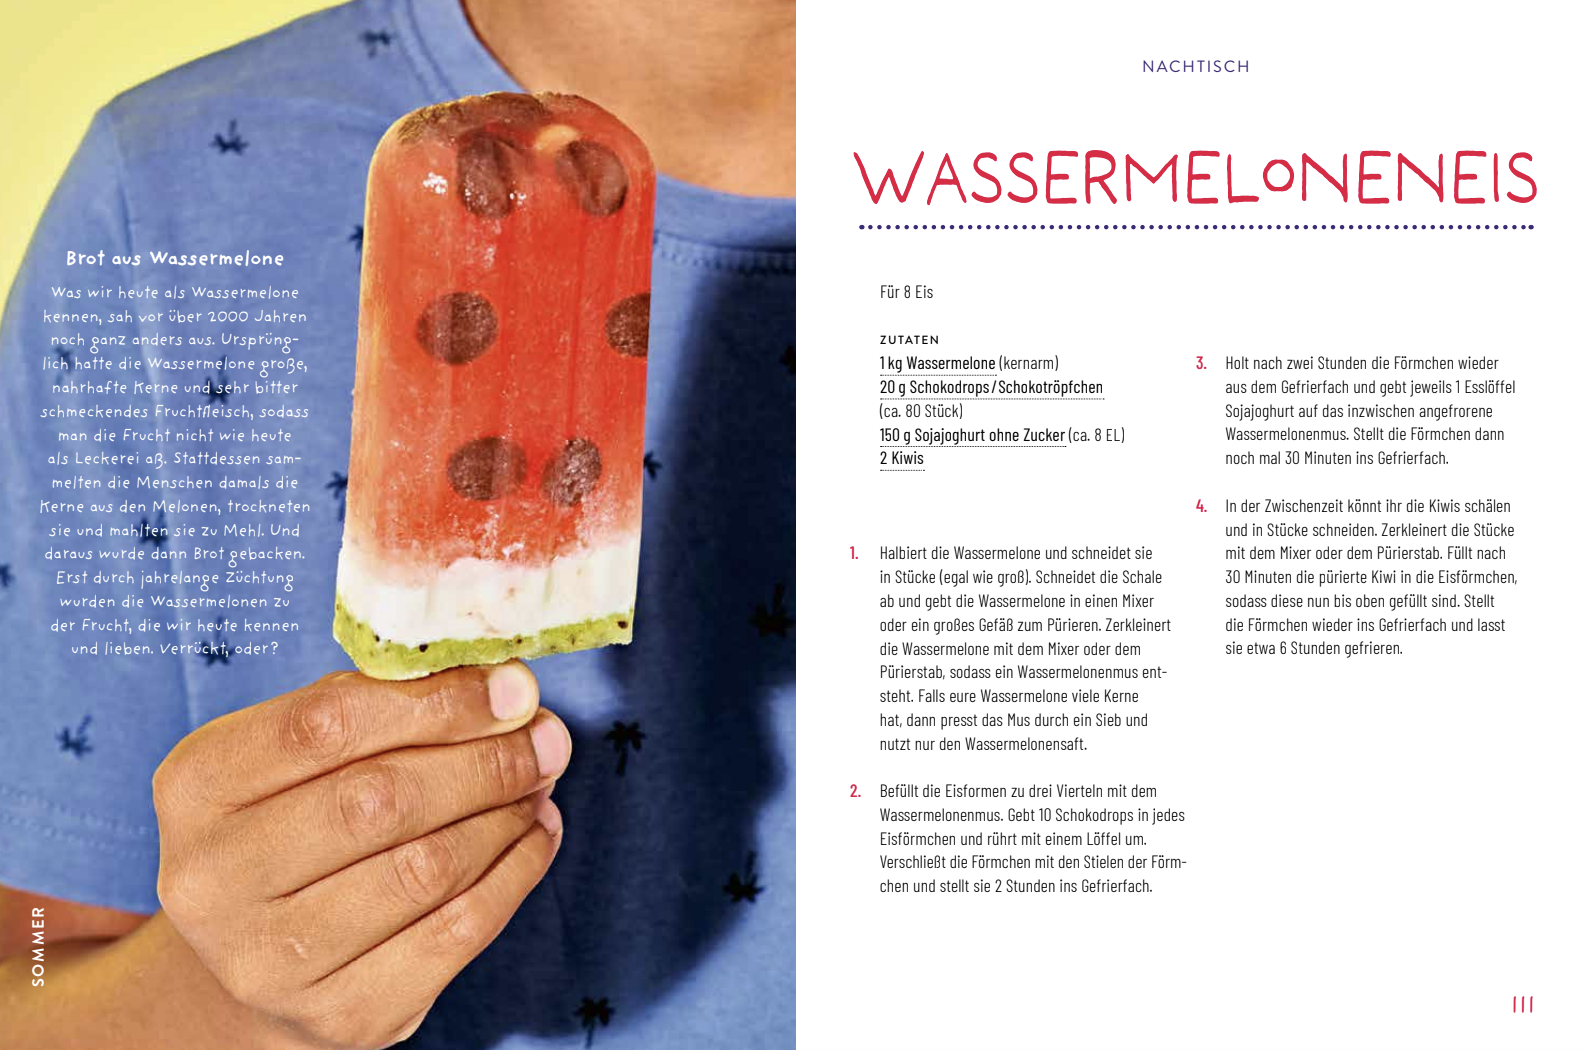 "Das grüne Kochbuch für Kinder" von Charoline Bauer und Lia Carlucci